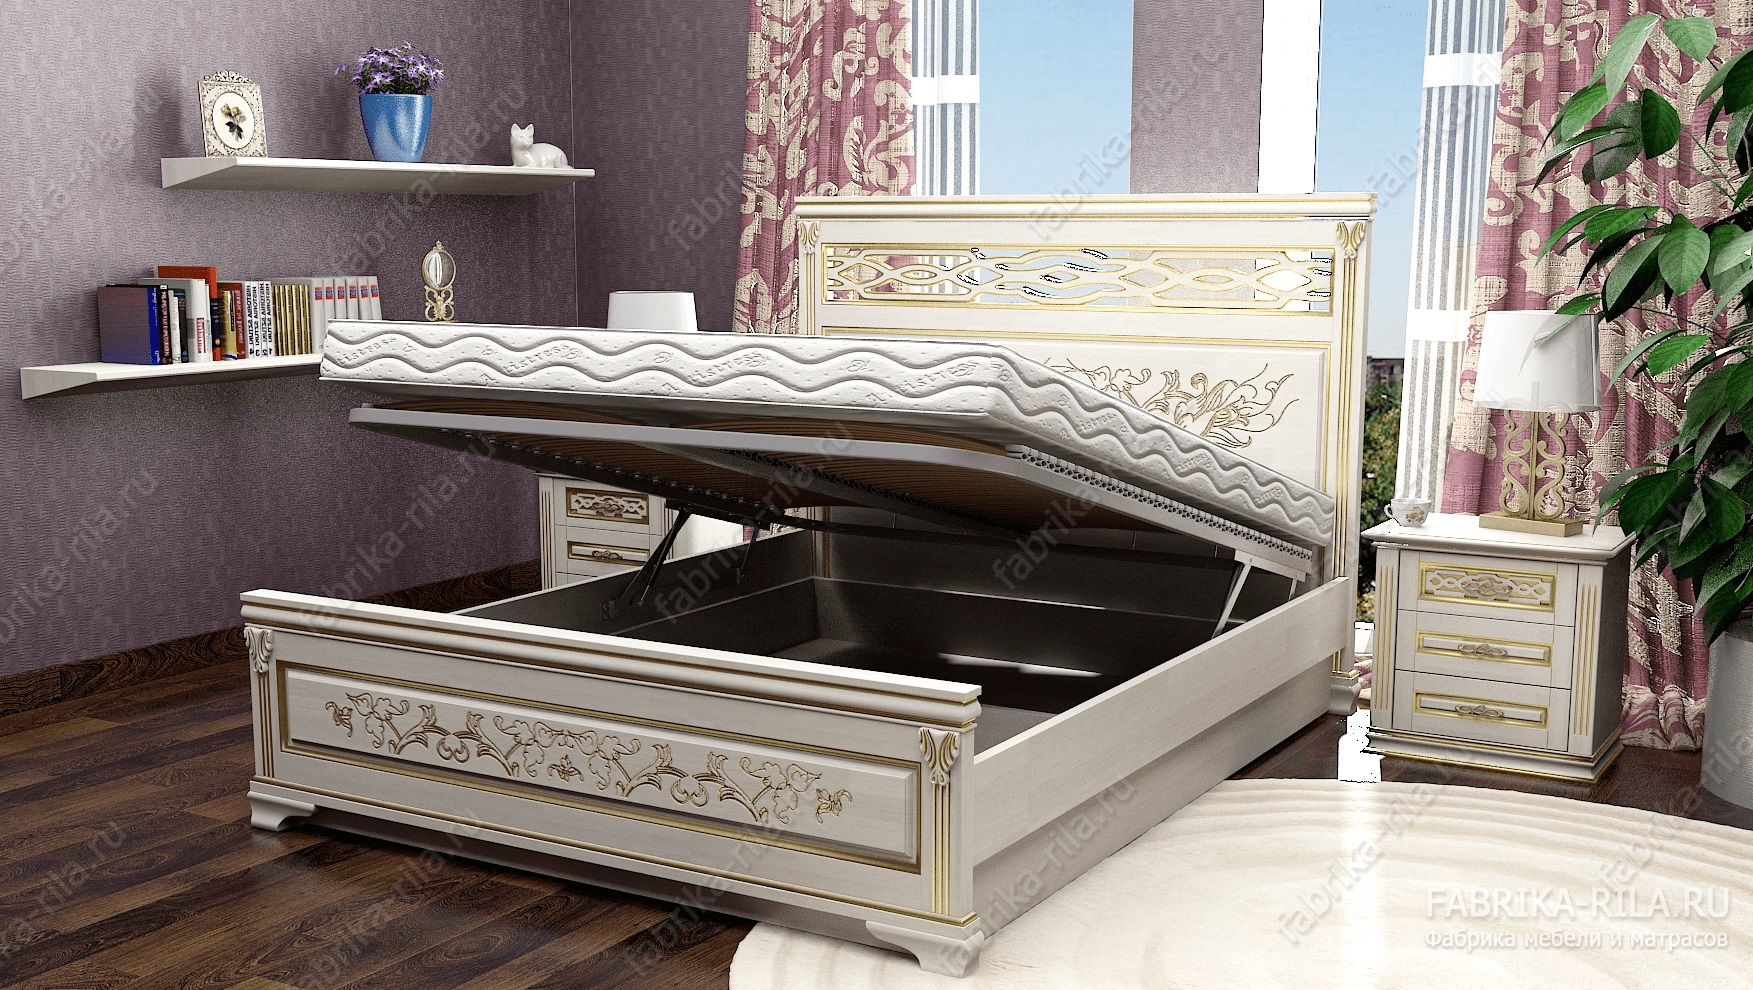 Кровать Lirоna 3 — 90x190 см. из бука